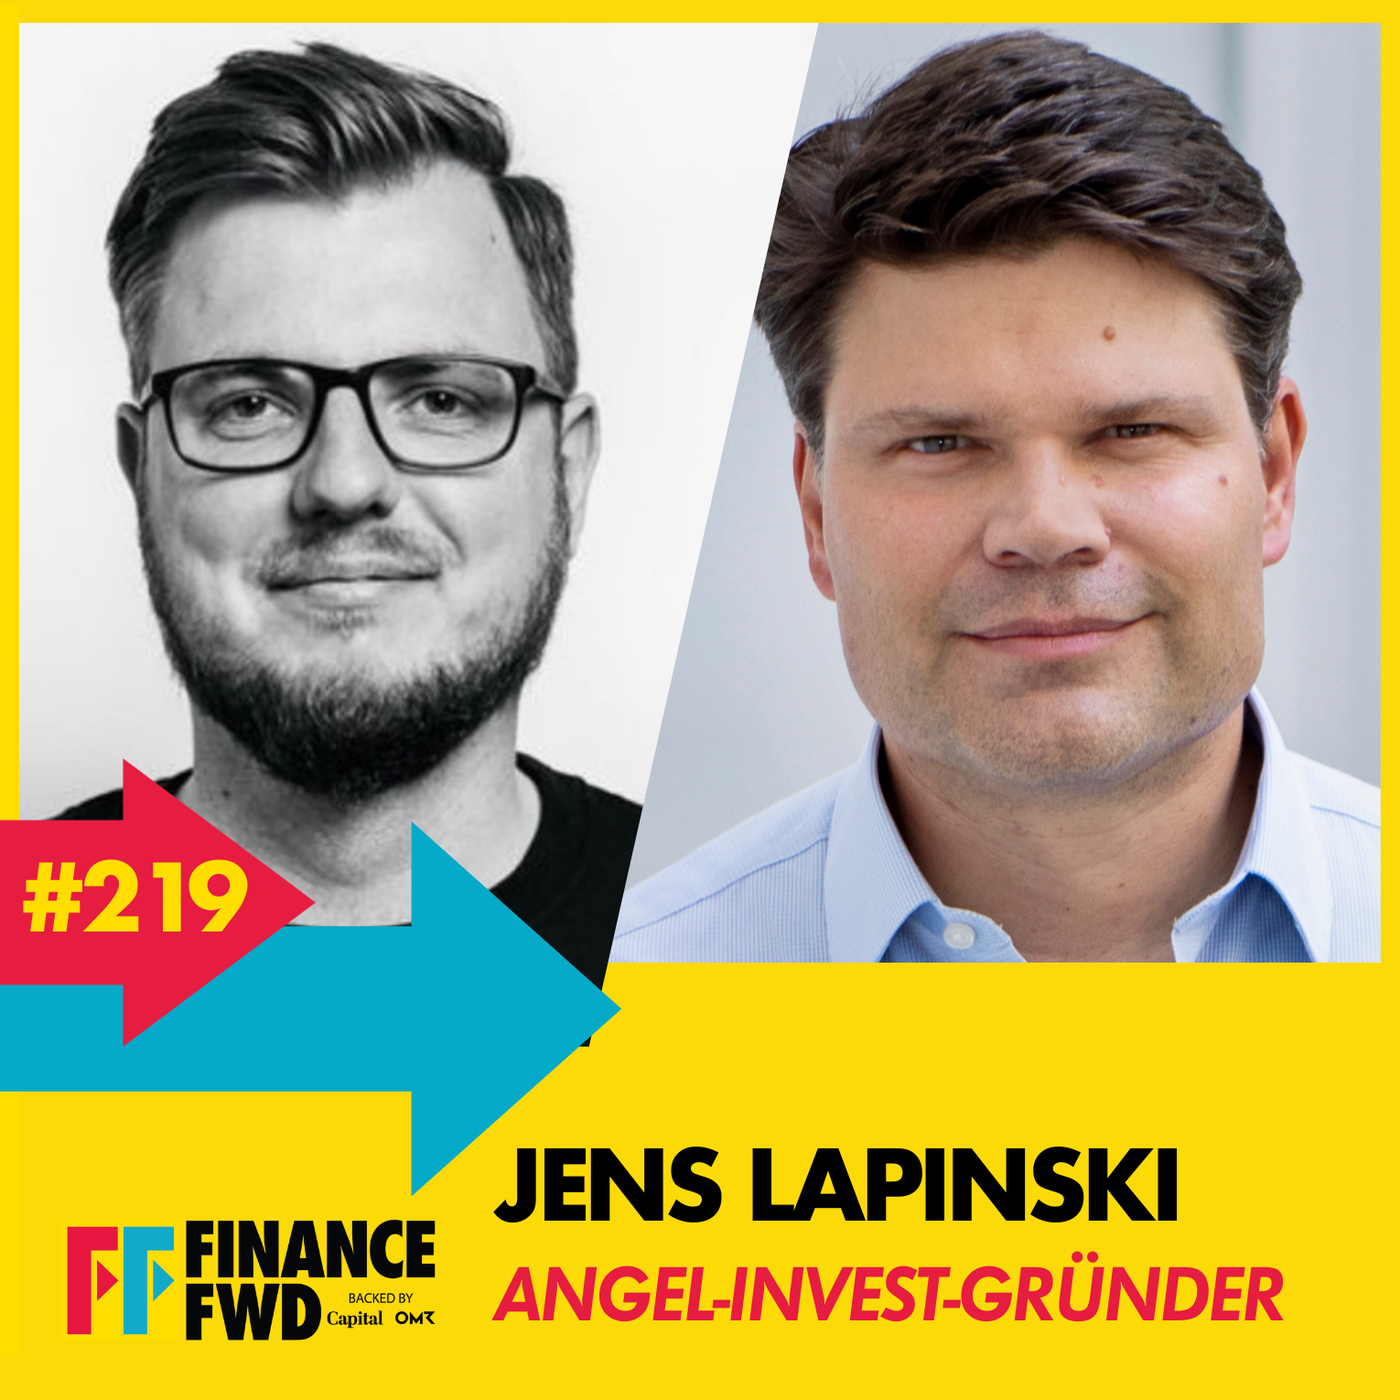 FinanceFWD #219 mit Angel-Invest-Gründer Jens Lapinski